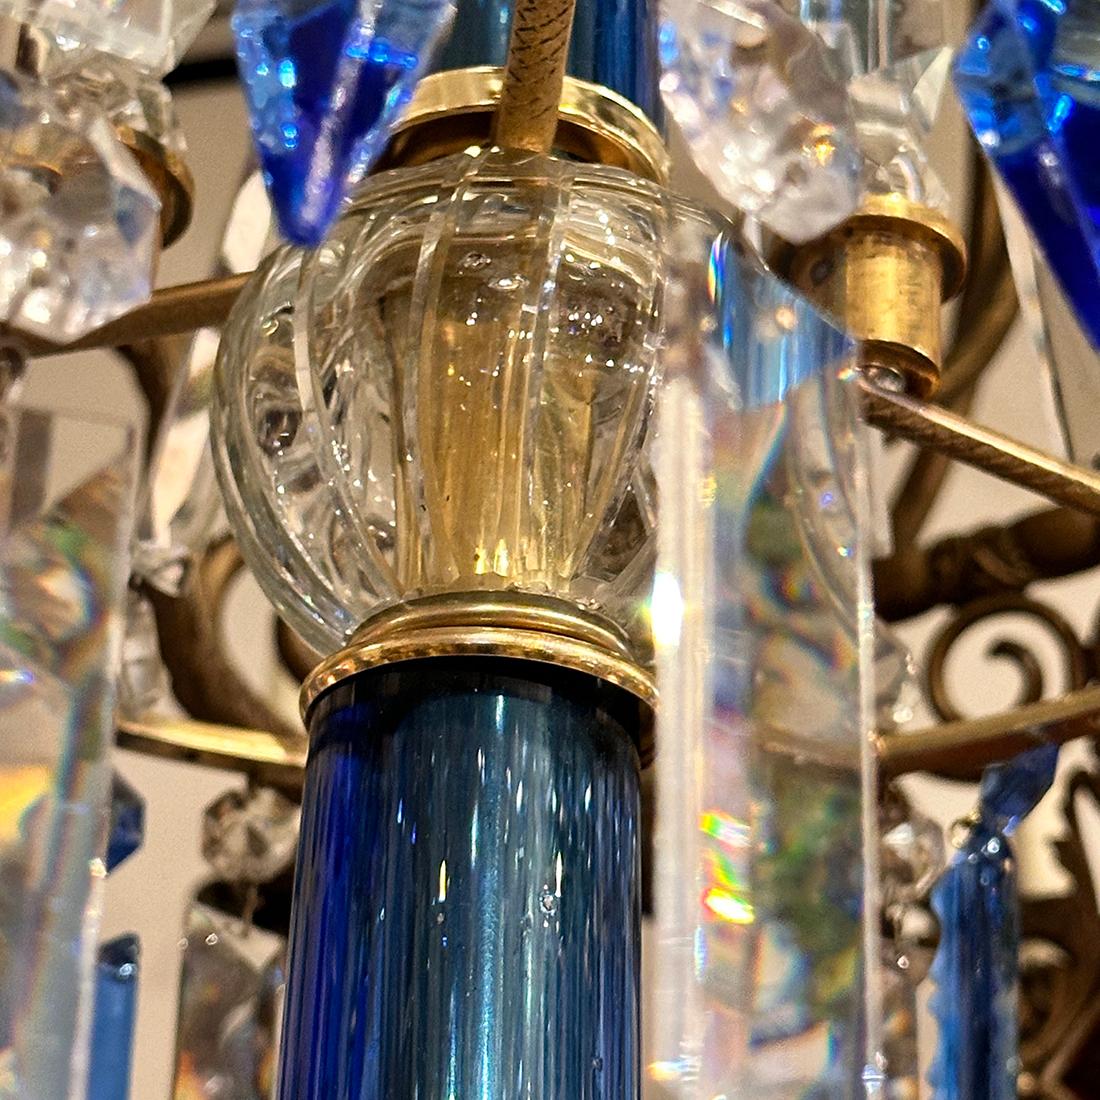 Lustre anglais en bronze doré des années 1920 avec pendentifs en cristal bleu et 12 bras.

Mesures :
Chute : 56